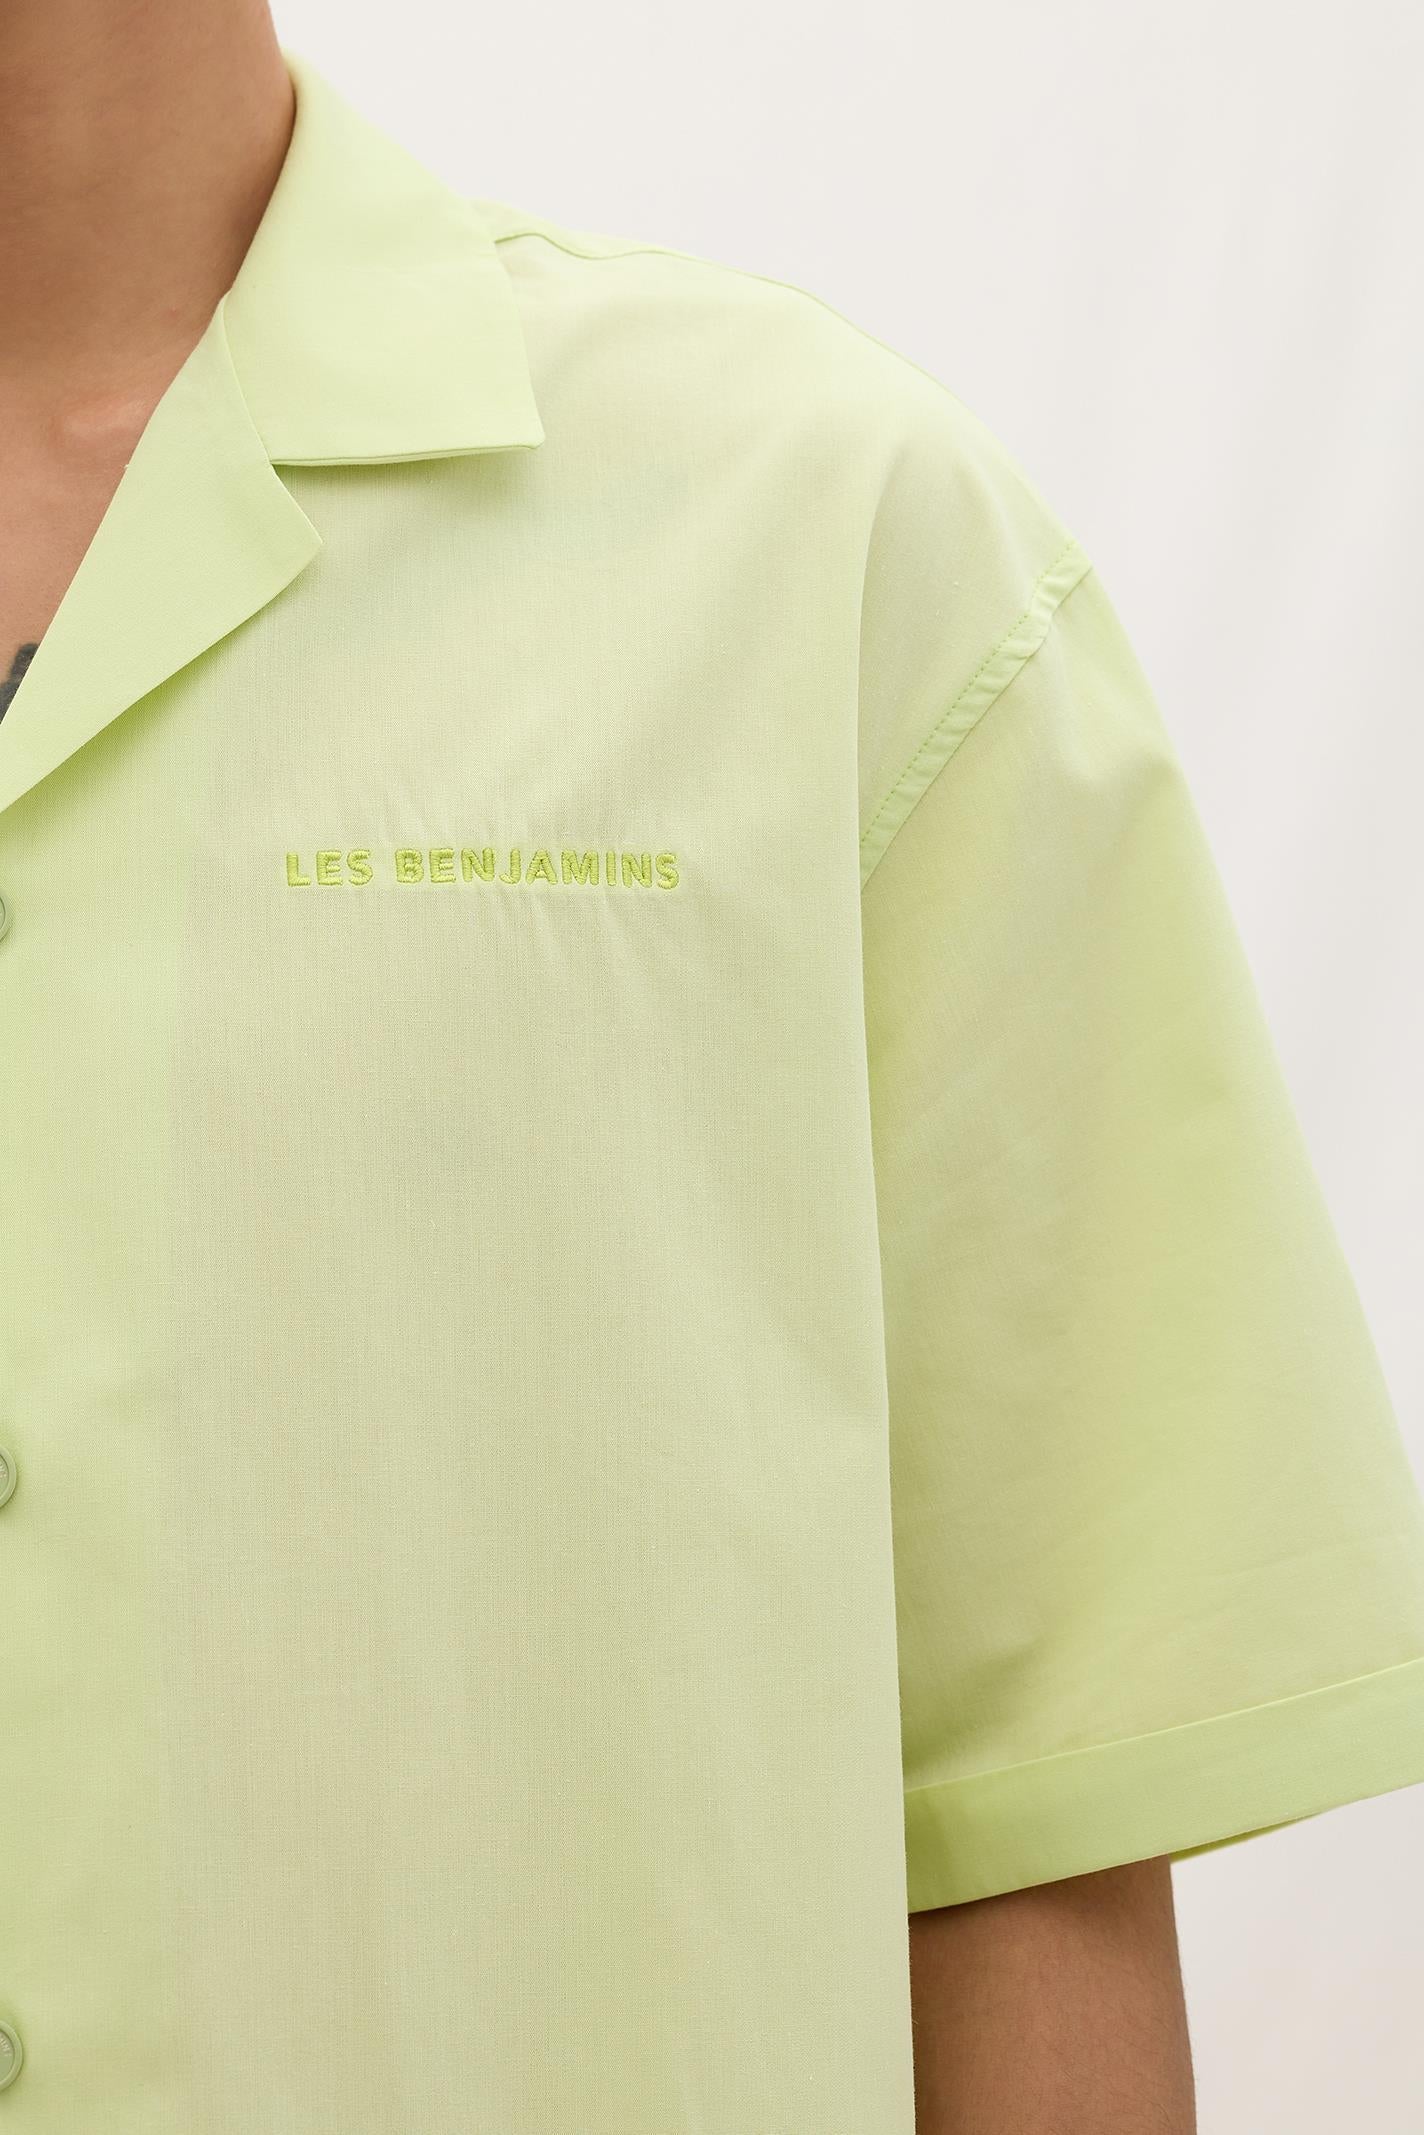 Les Benjamins Short Sleeve Shirt 301 - Essentials 8.0